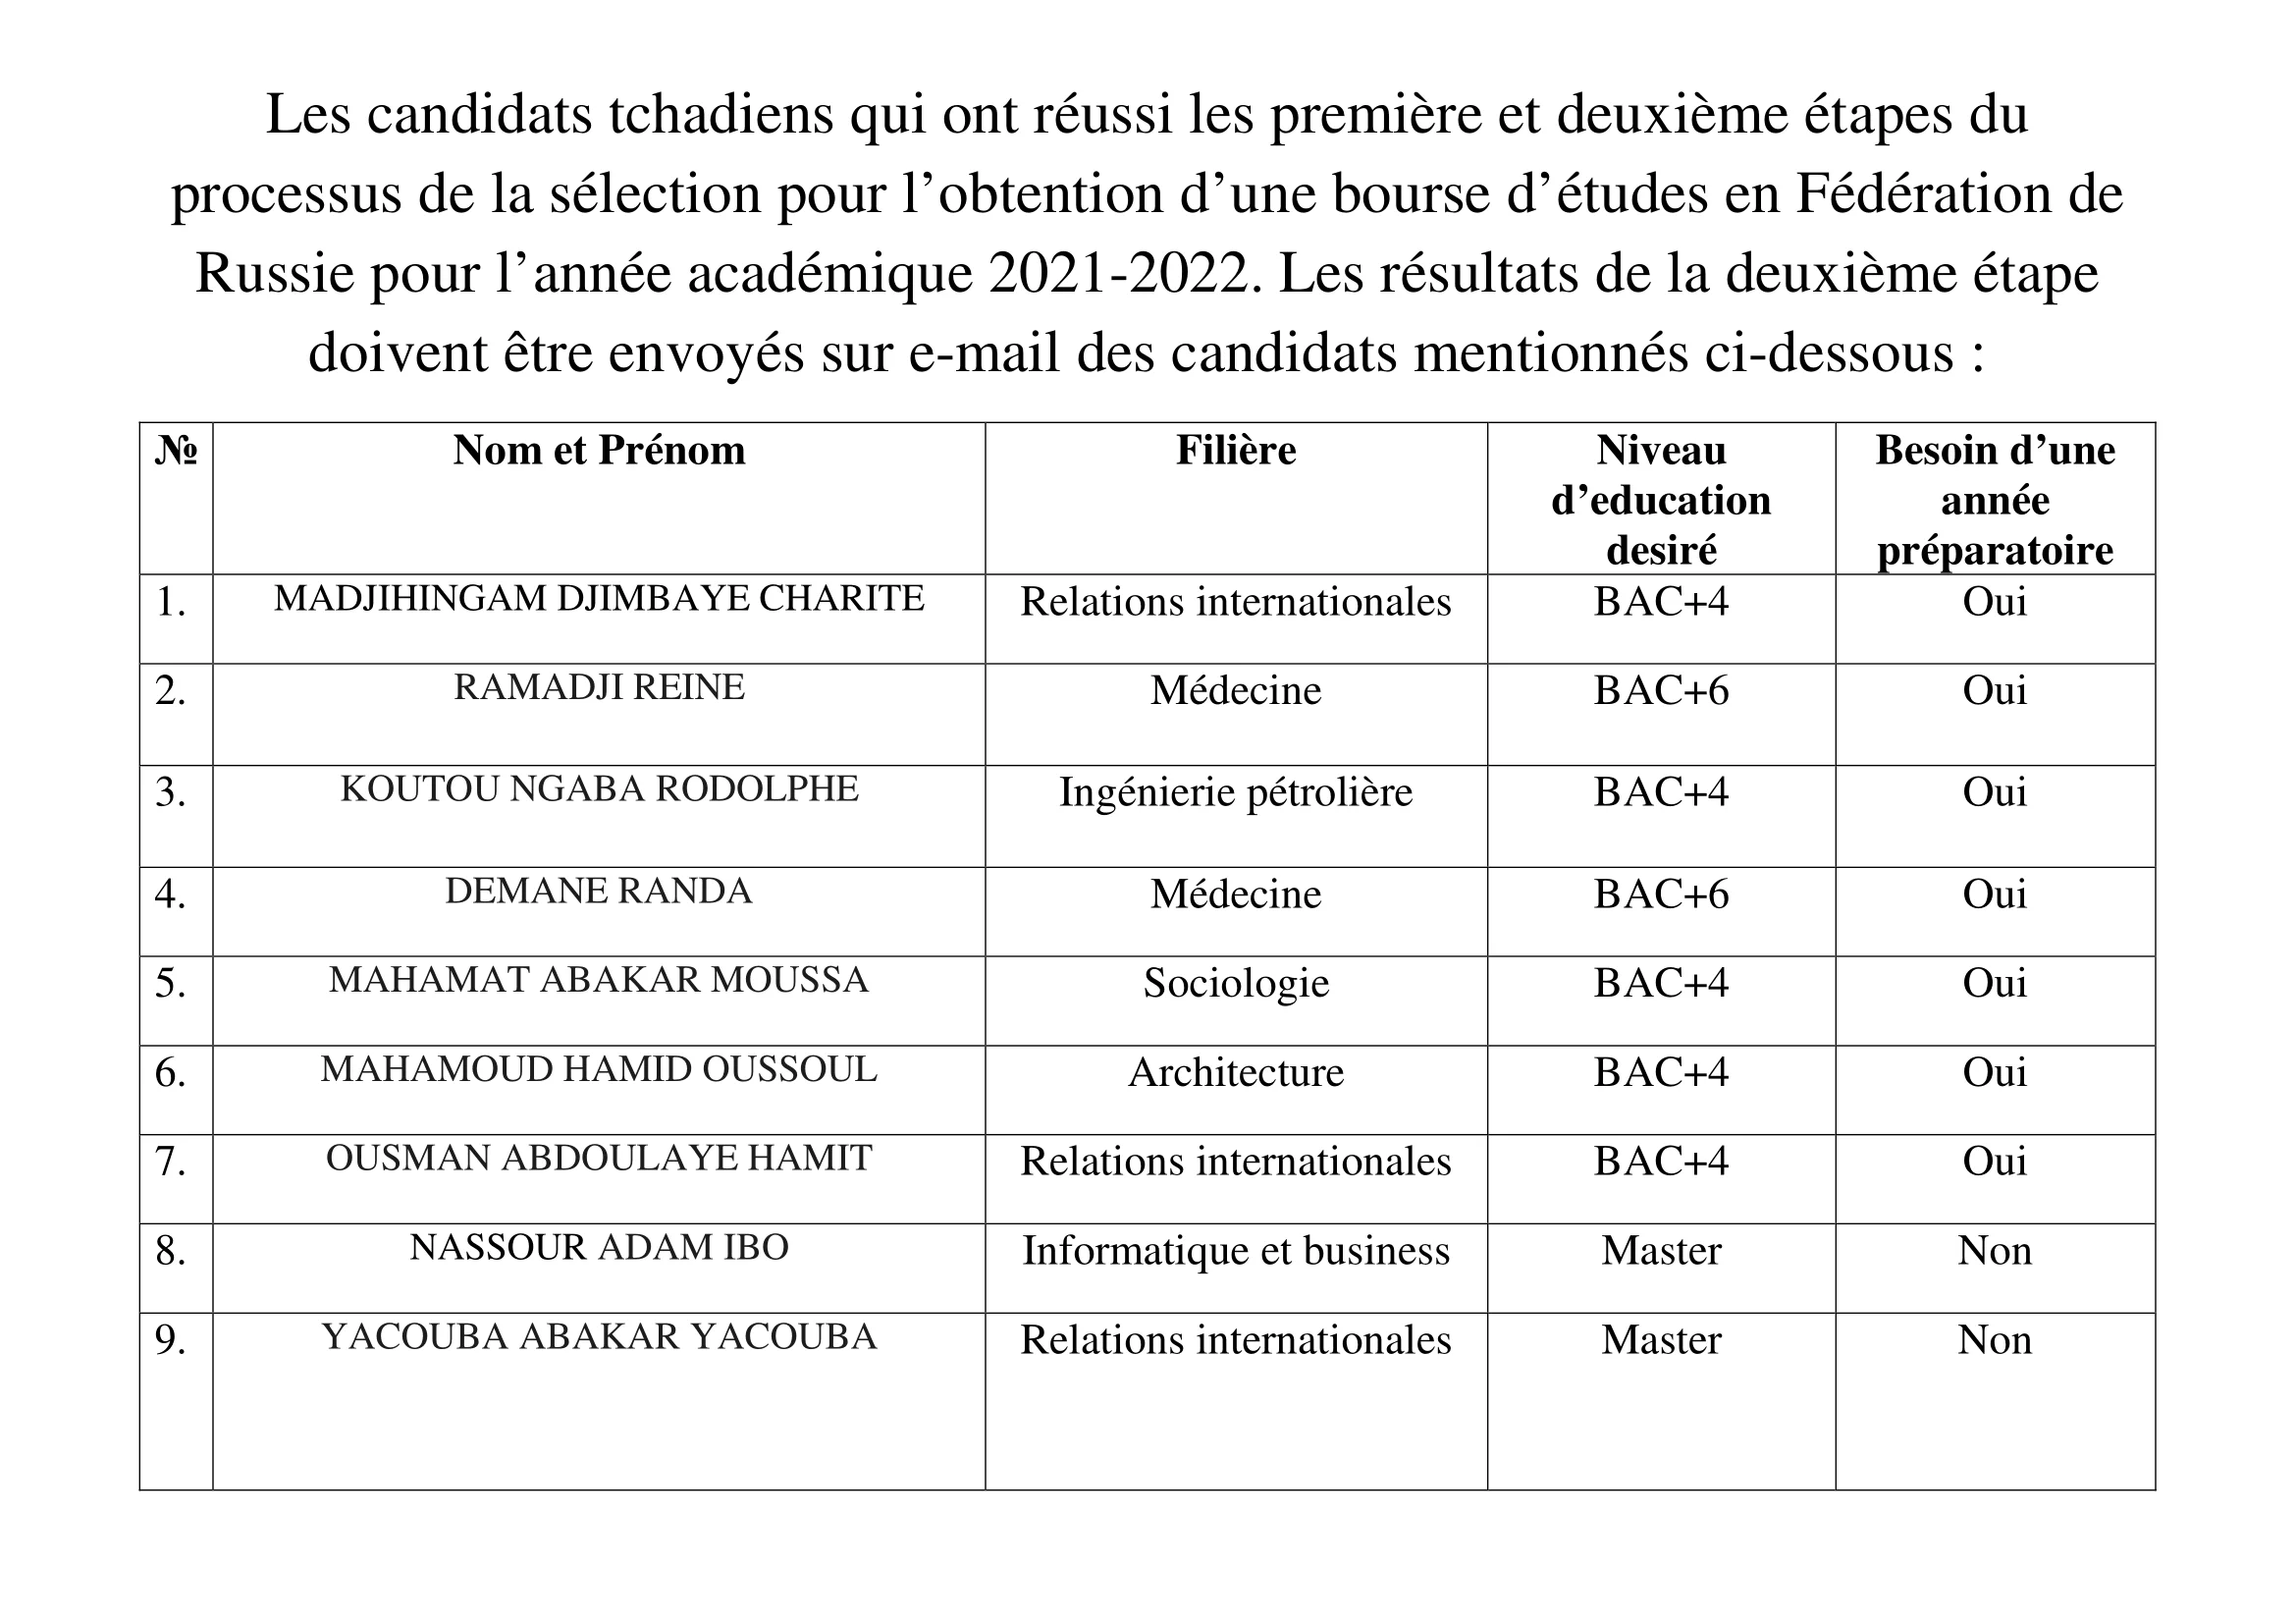 L’Ambassade de la Fédération de Russie en République du Tchad publie la liste des candidats tchadiens qui ont réussi les première et deuxième étapes du processus de la sélection pour l’obtention d’une bourse d’études en Fédération de Russie pour l’année académique 2021-2022.